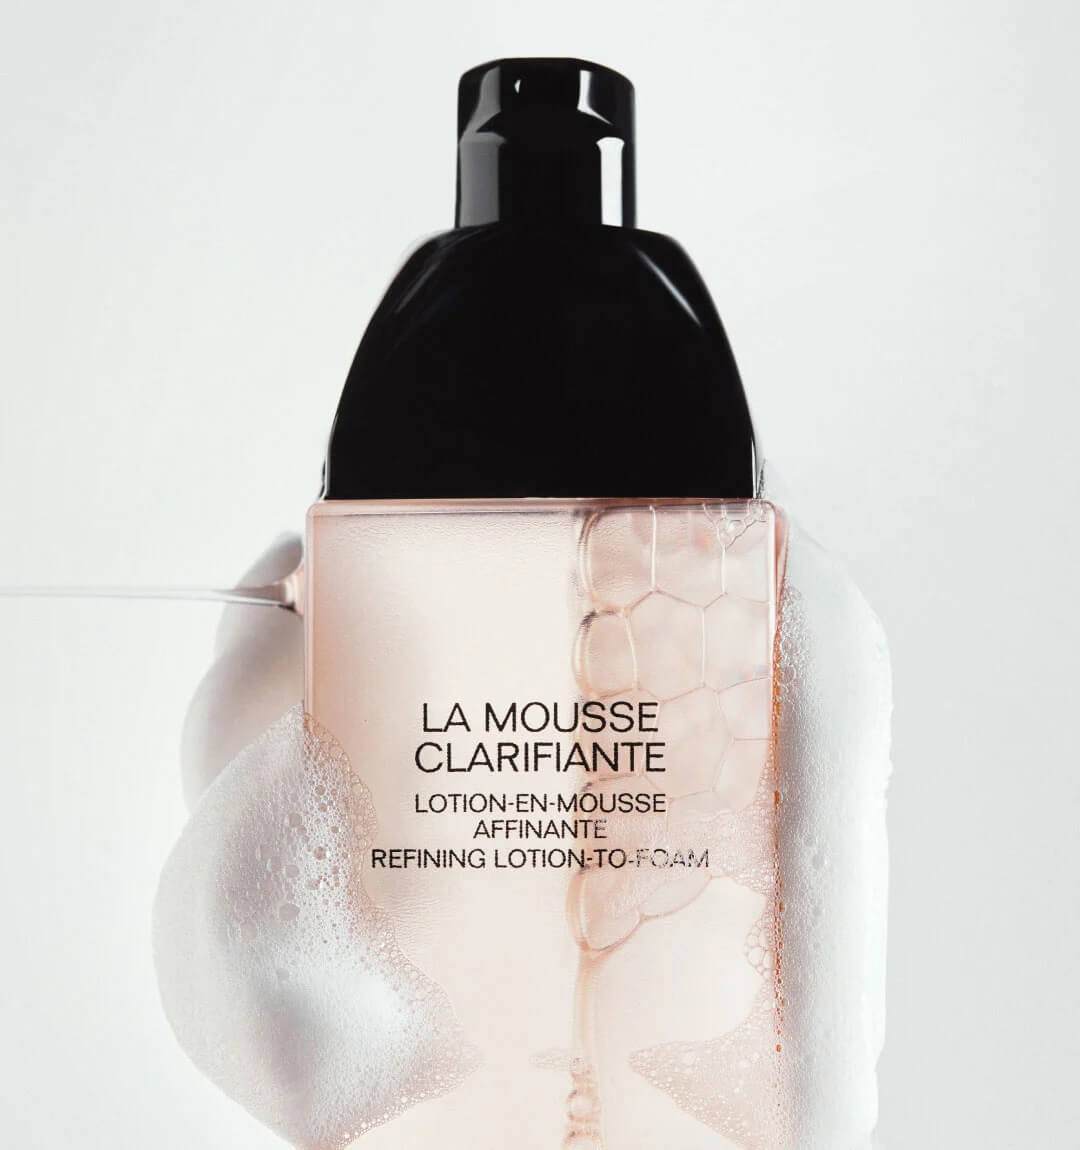 Nuova Chanel La Mousse Clarifiante, puro piacere nella skincare quotidiana - Le Shopping News Il Magazine per gli Appassionati di Moda e Tendenze